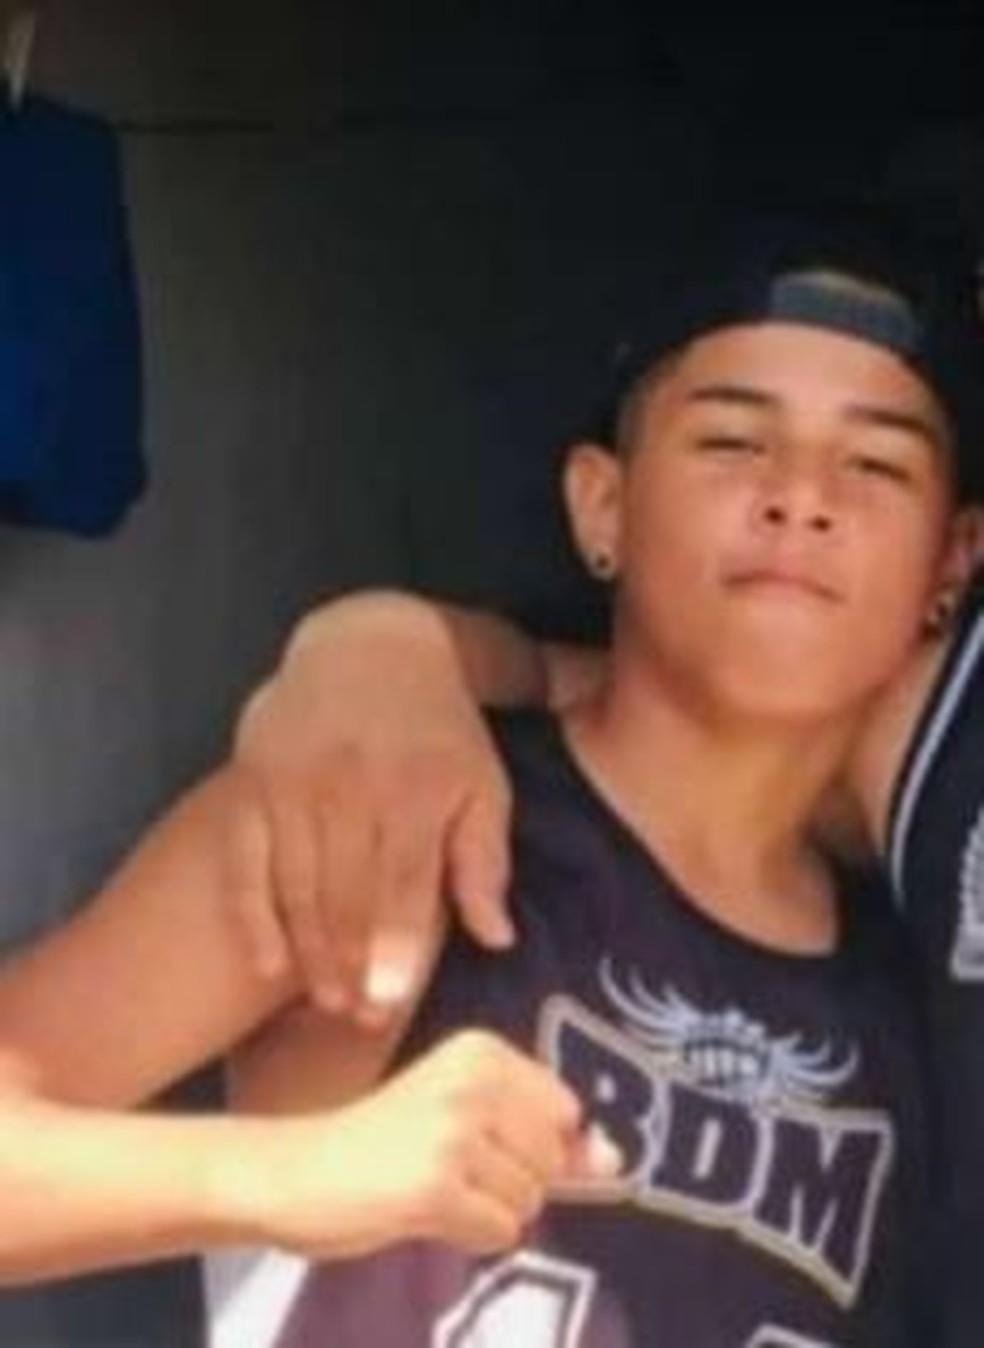 Torcedor Otoniel Fialho, de 15 anos, morreu no hospital diás após ser agredido por grupo com camisa de torcida organizada rival. — Foto: Arquivo pessoal